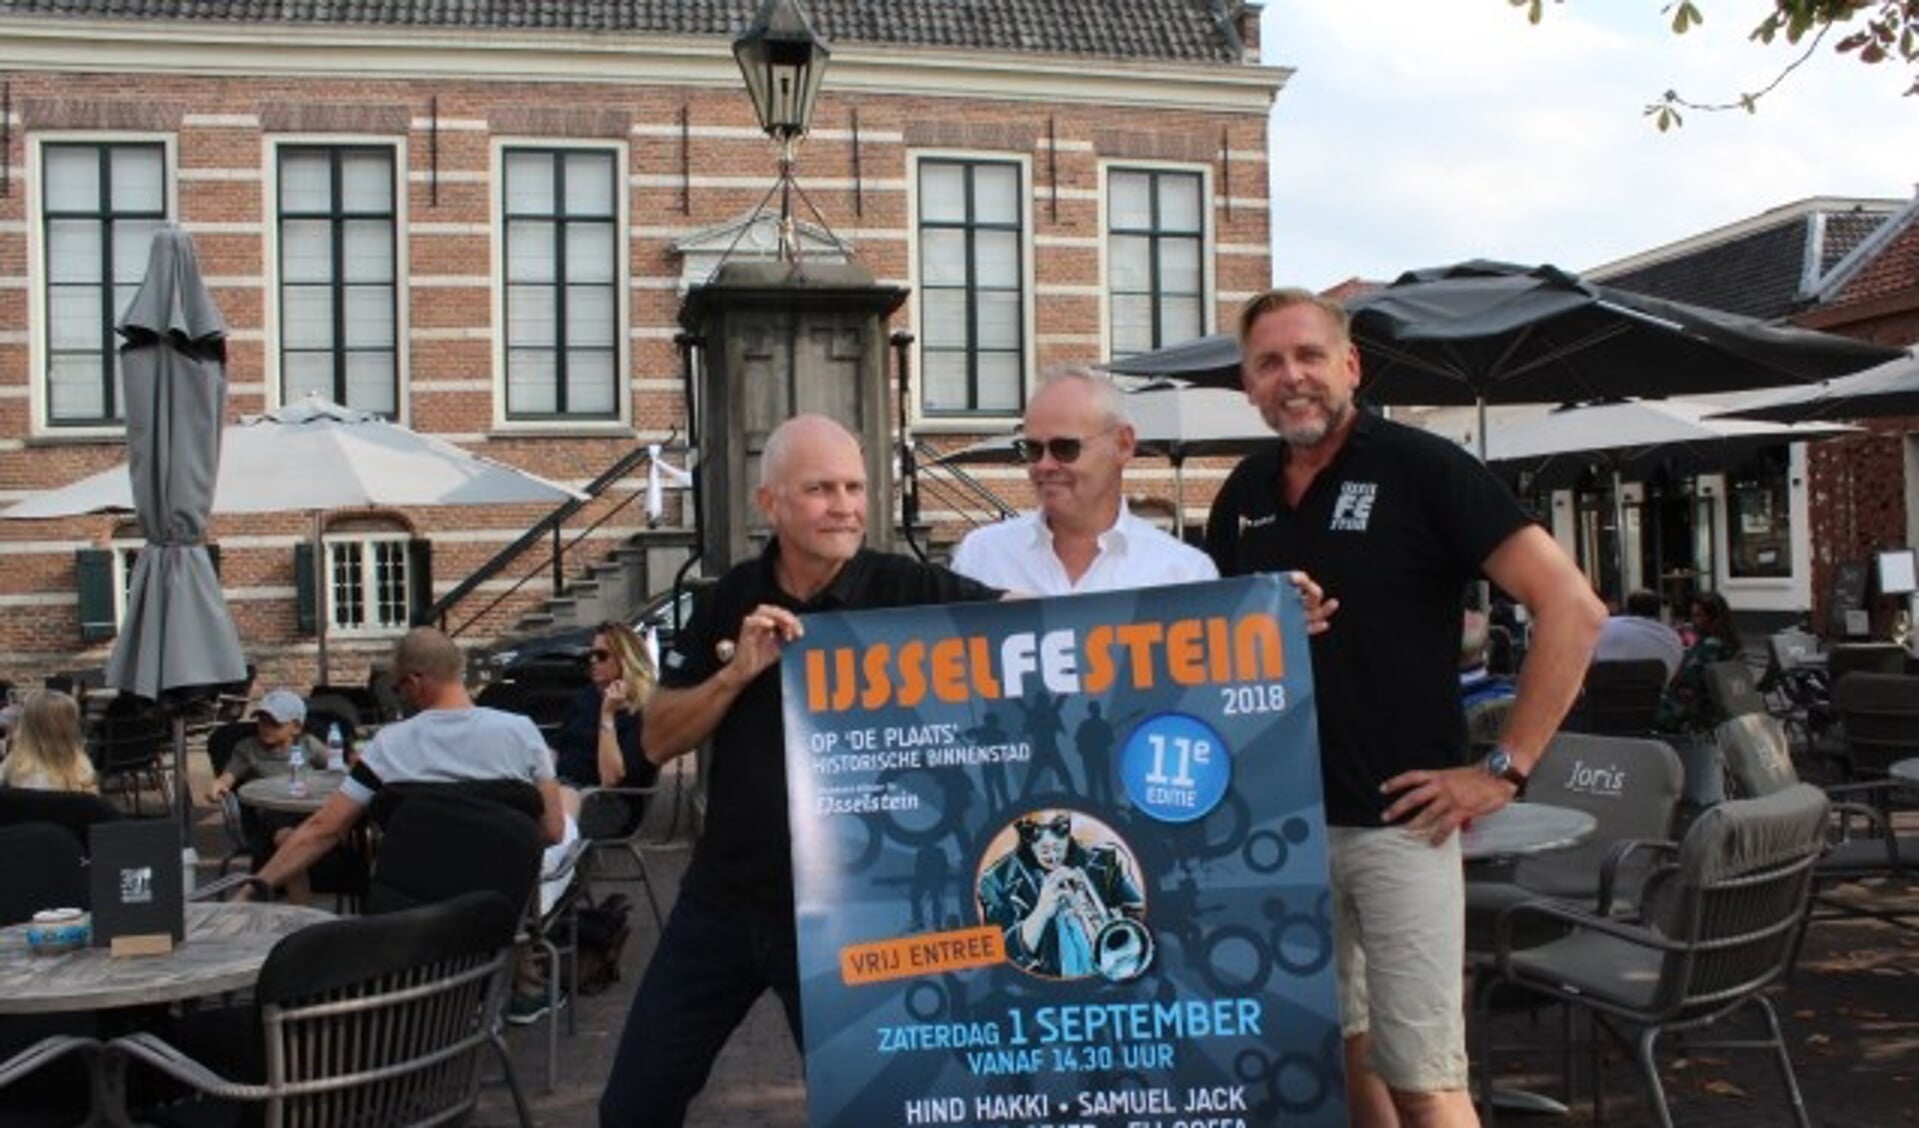 Walter van Meyl, Jan de Graauw en Robert Landsman hebben de organisatie rond en zijn al helemaal in de stemming. (Foto: Lysette Verwegen)